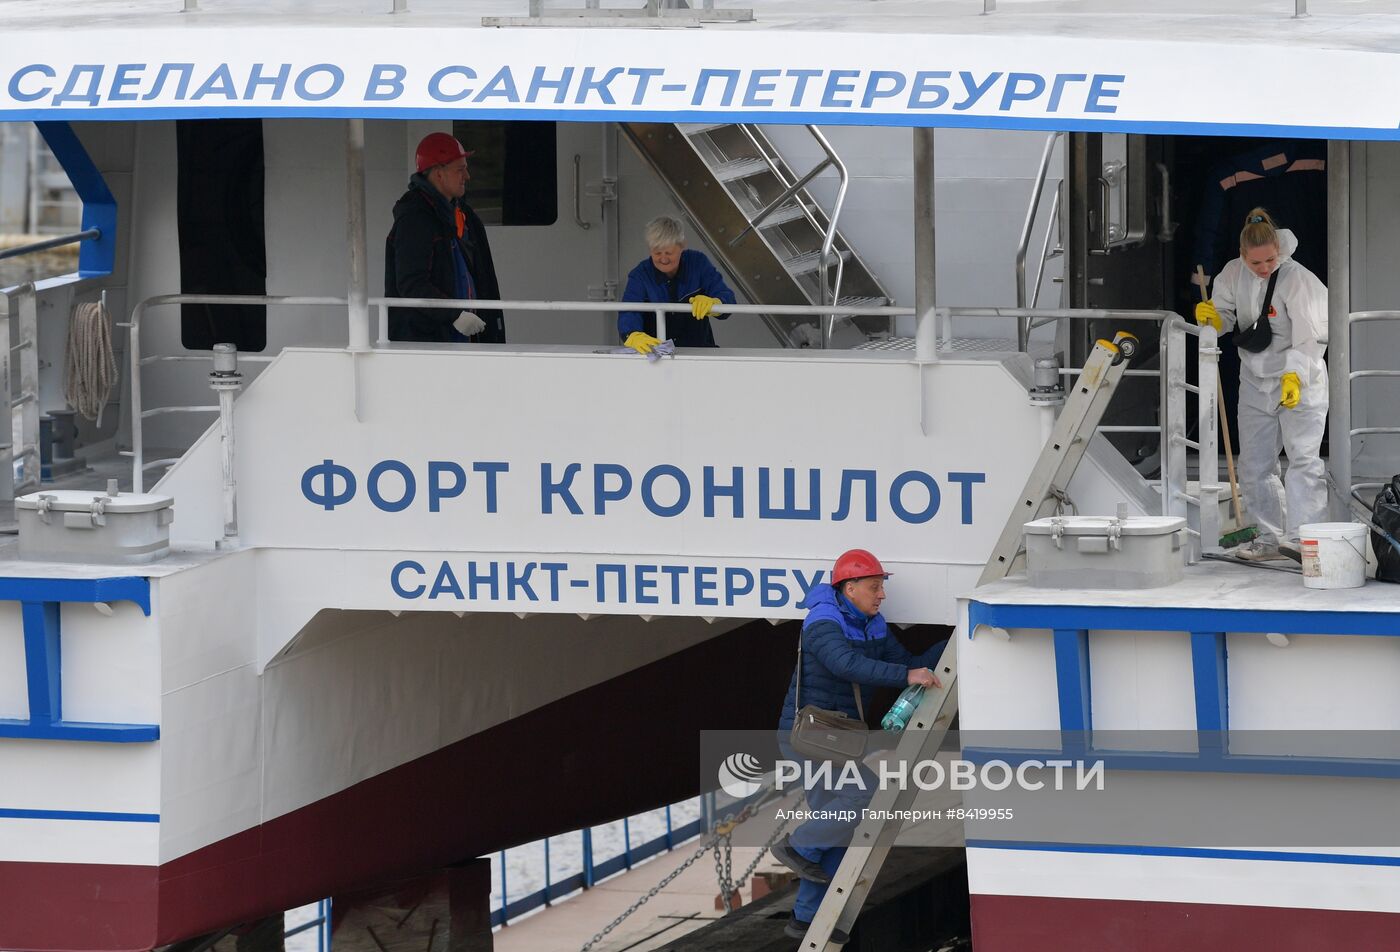 Спуск на воду первого пассажирского катамарана проекта "Котлин" в Санкт-Петербурге